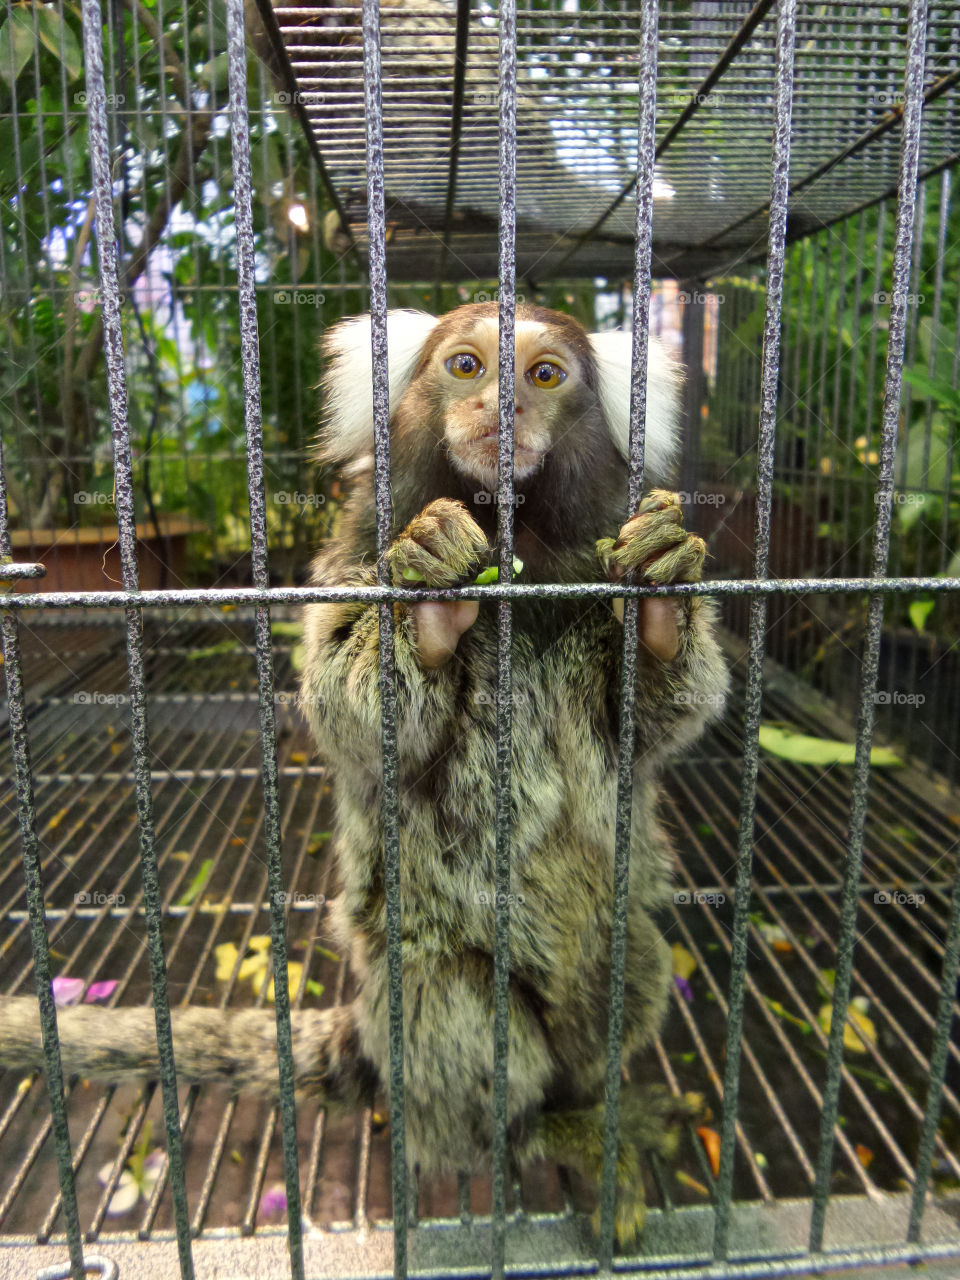 Captive monkey. The monkeys were imprisoned lack of independence